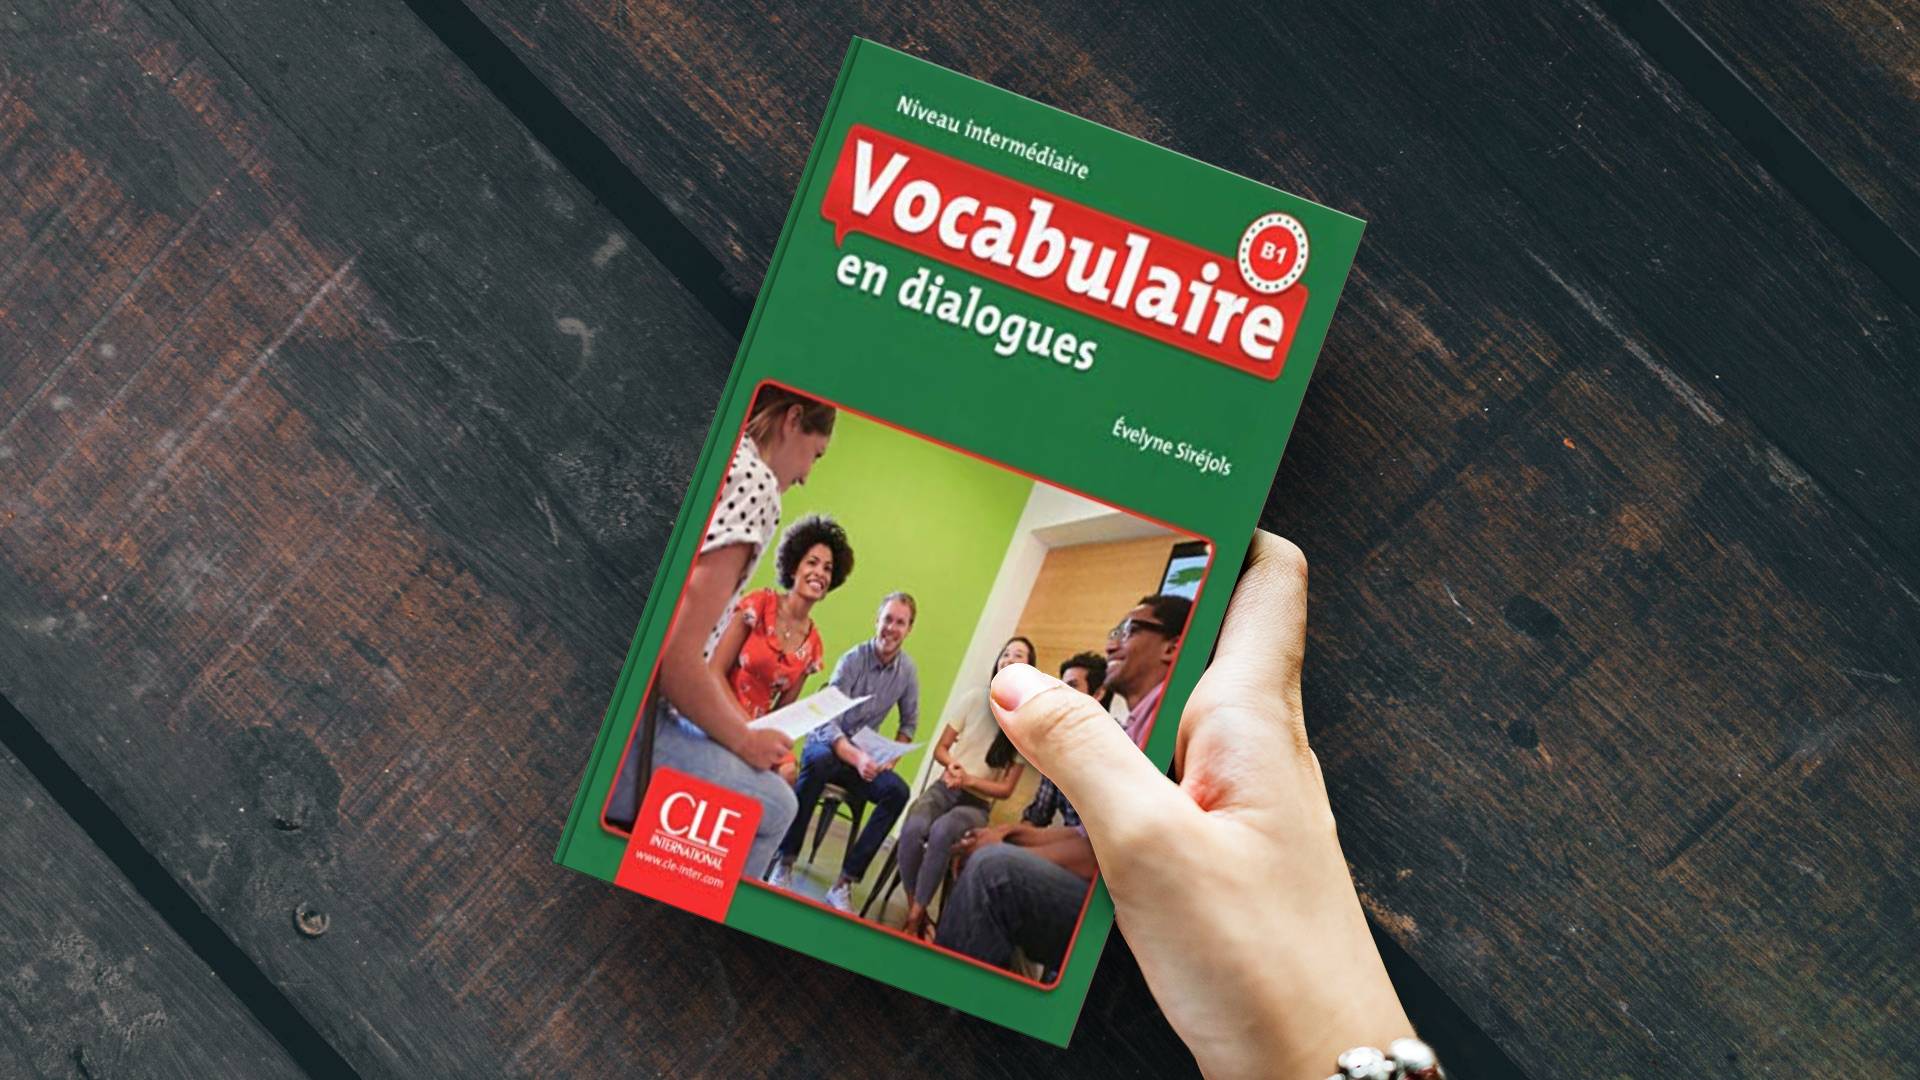 خرید کتاب زبان دانشگاهی | فروشگاه اینترنتی کتاب زبان | Vocabulaire en dialogues intermediaire 2eme edition | وکبیولر این دیالوگ اینترمدیت ویرایش دوم